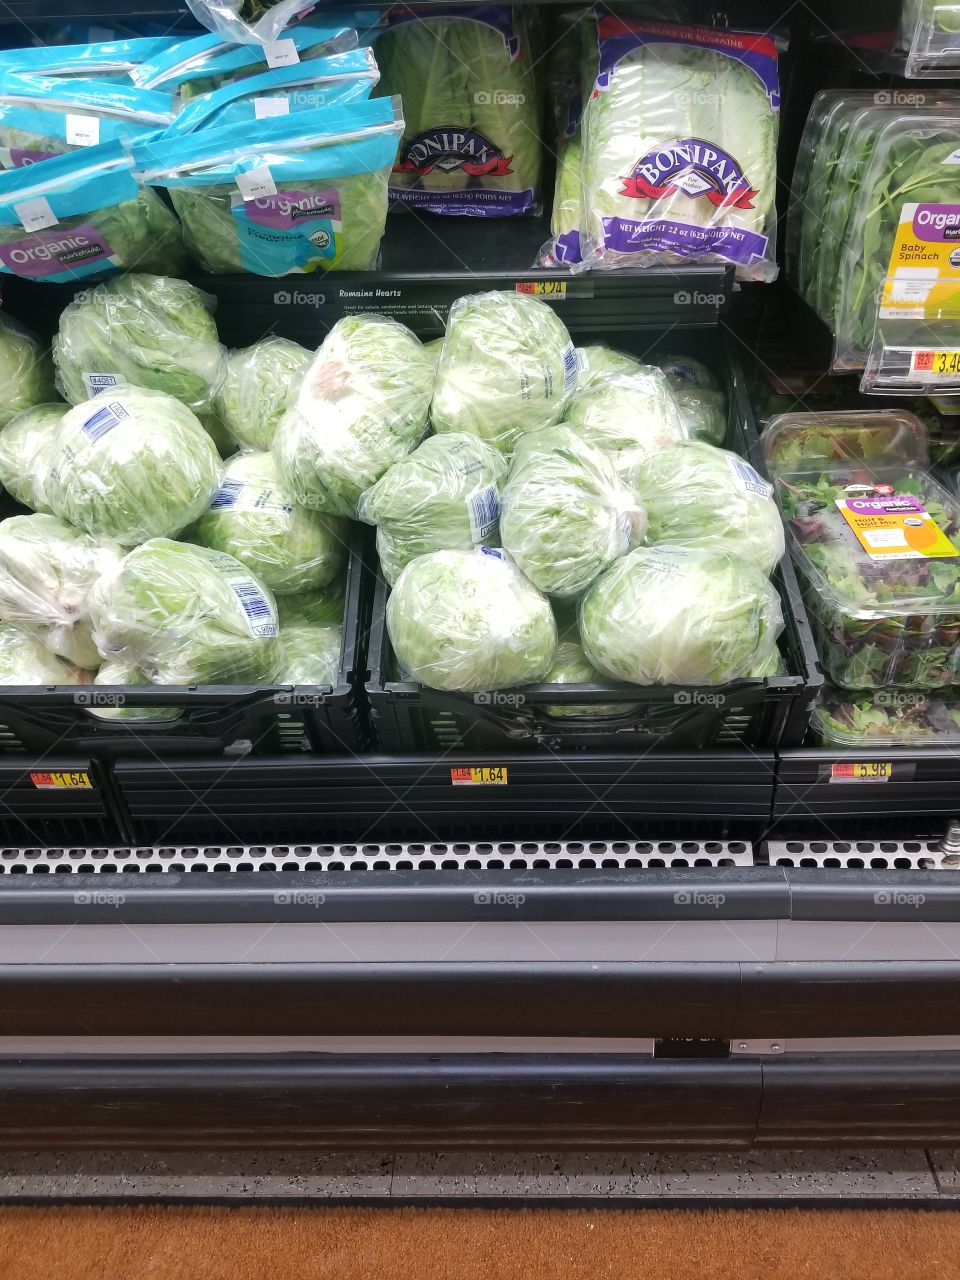 Grocery shopping for lettuce